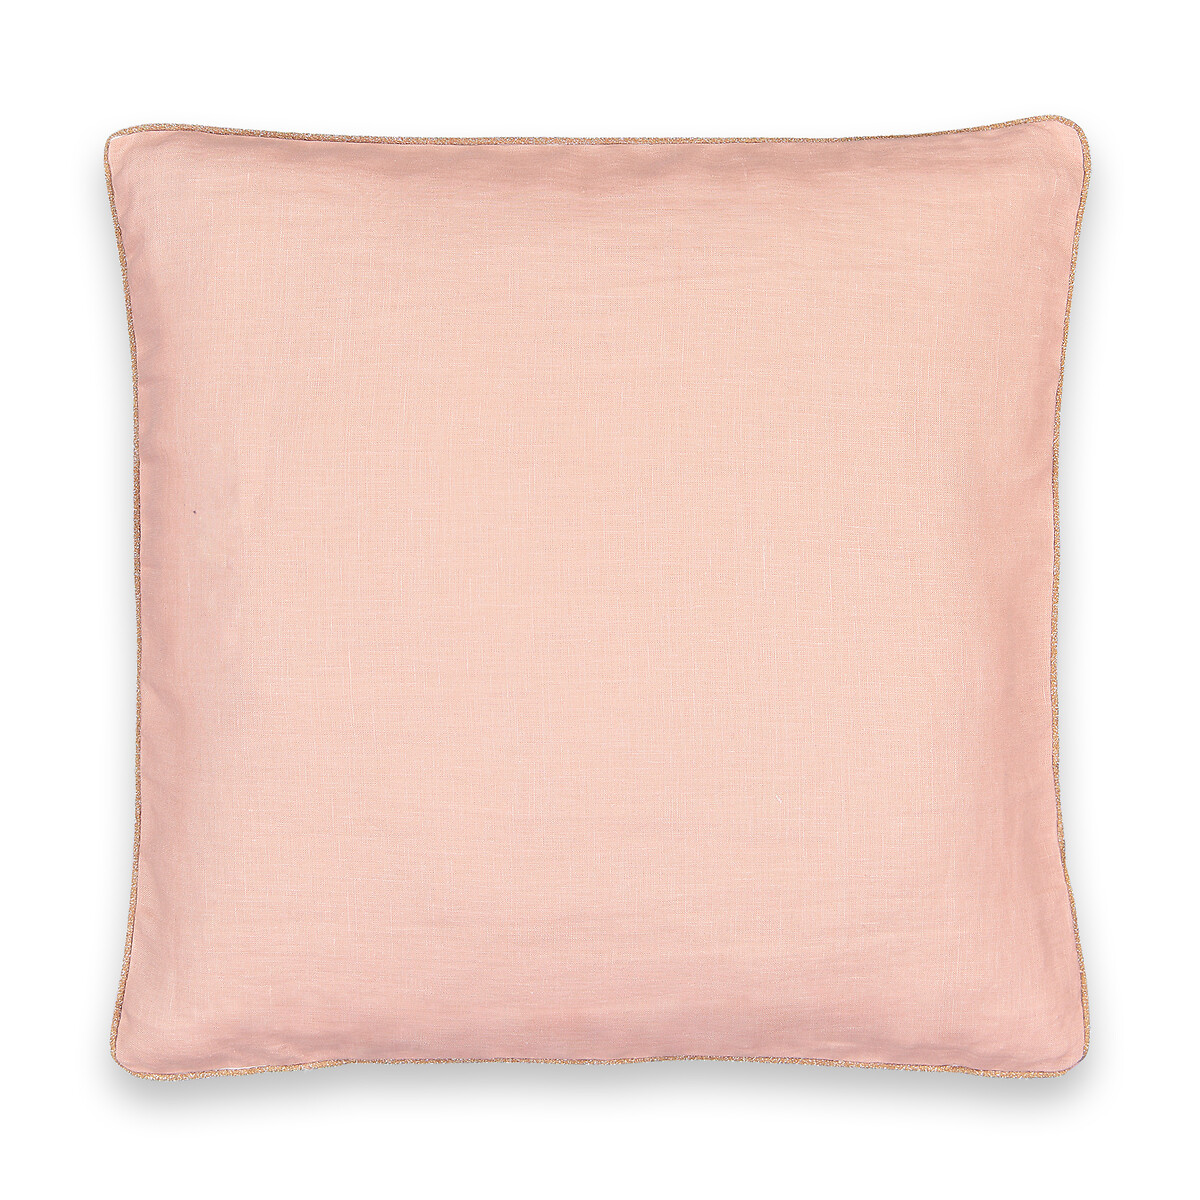 Наволочка LaRedoute Из стираного льна с отделкой косой бейкой золотого цвета Onega 45 x 45 см розовый, размер 45 x 45 см